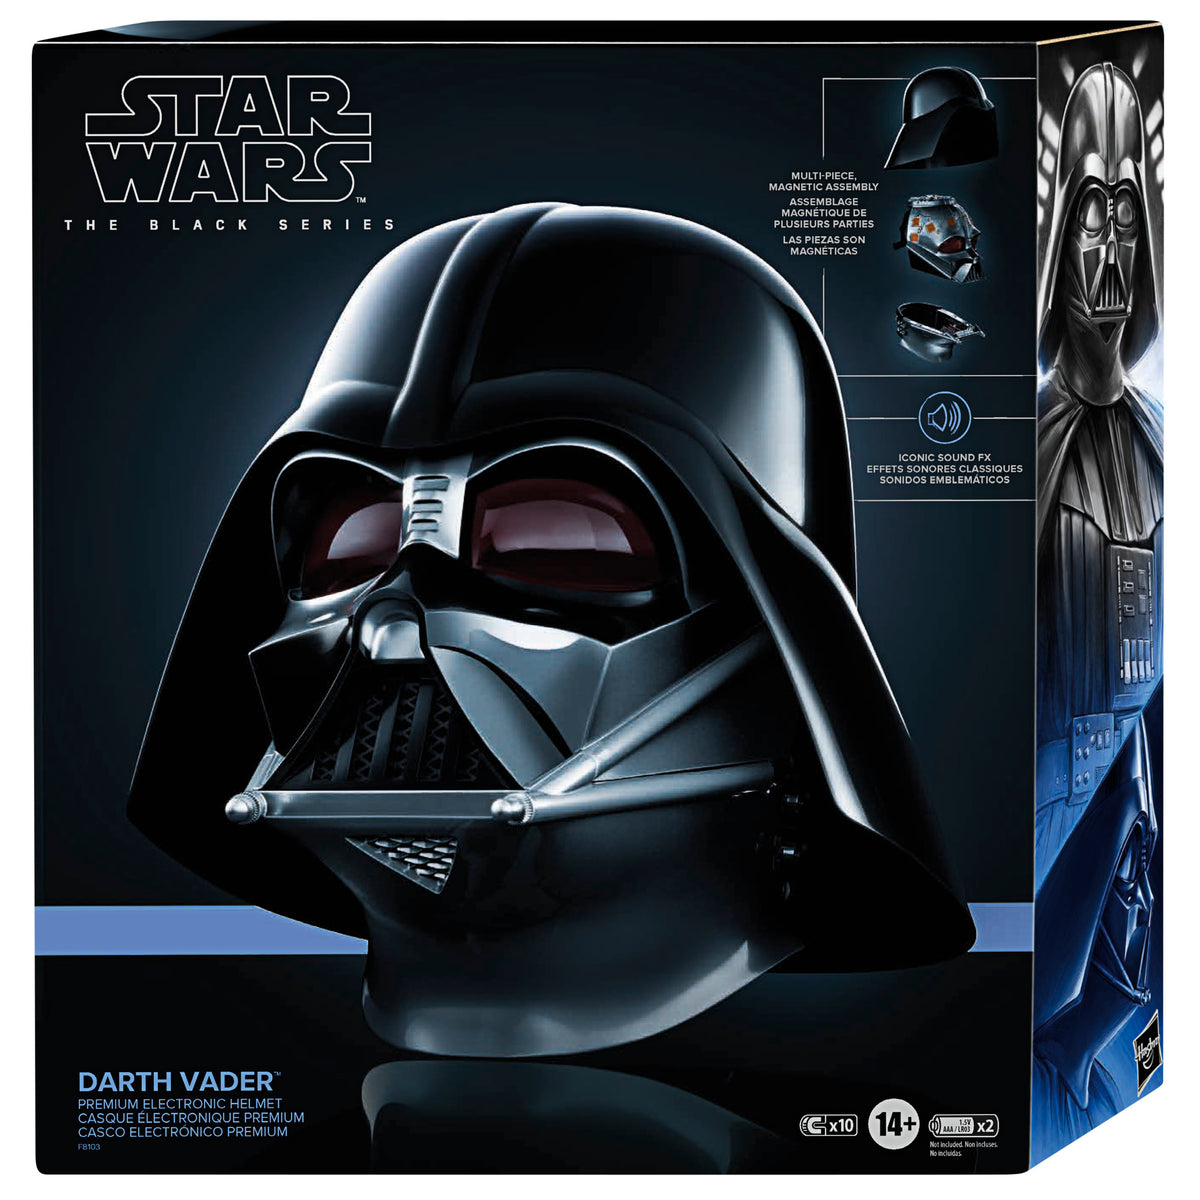 Mislukking Converteren Ga door Star Wars The Black Series Darth Vader Premium Electronic Helmet – Hasbro  Pulse